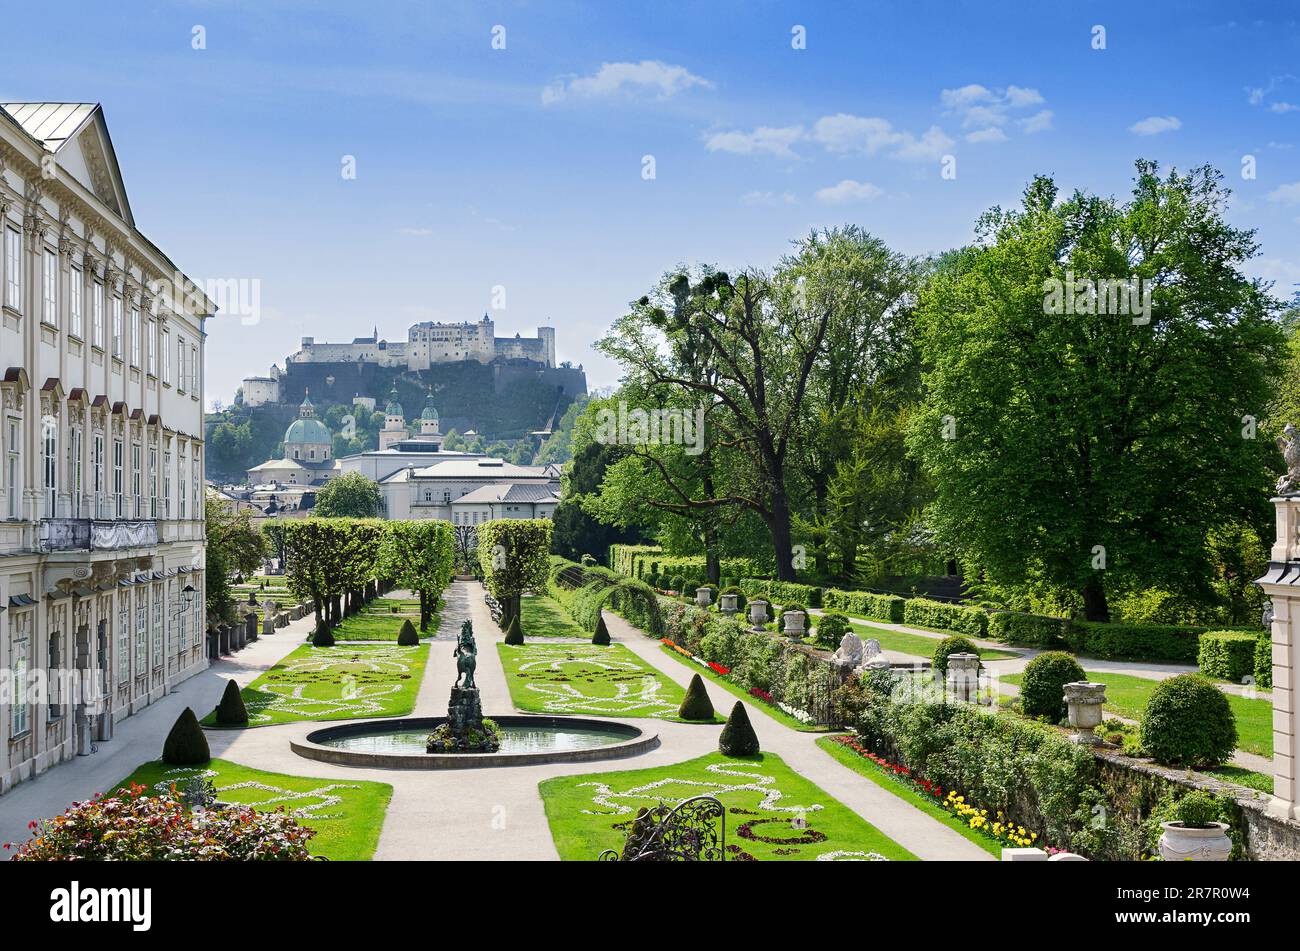 Salzbourg ville en Autriche, centre historique avec le Palais Baroque Mirabell et le jardin, et avec la forteresse Hohensalzburg au loin. Banque D'Images